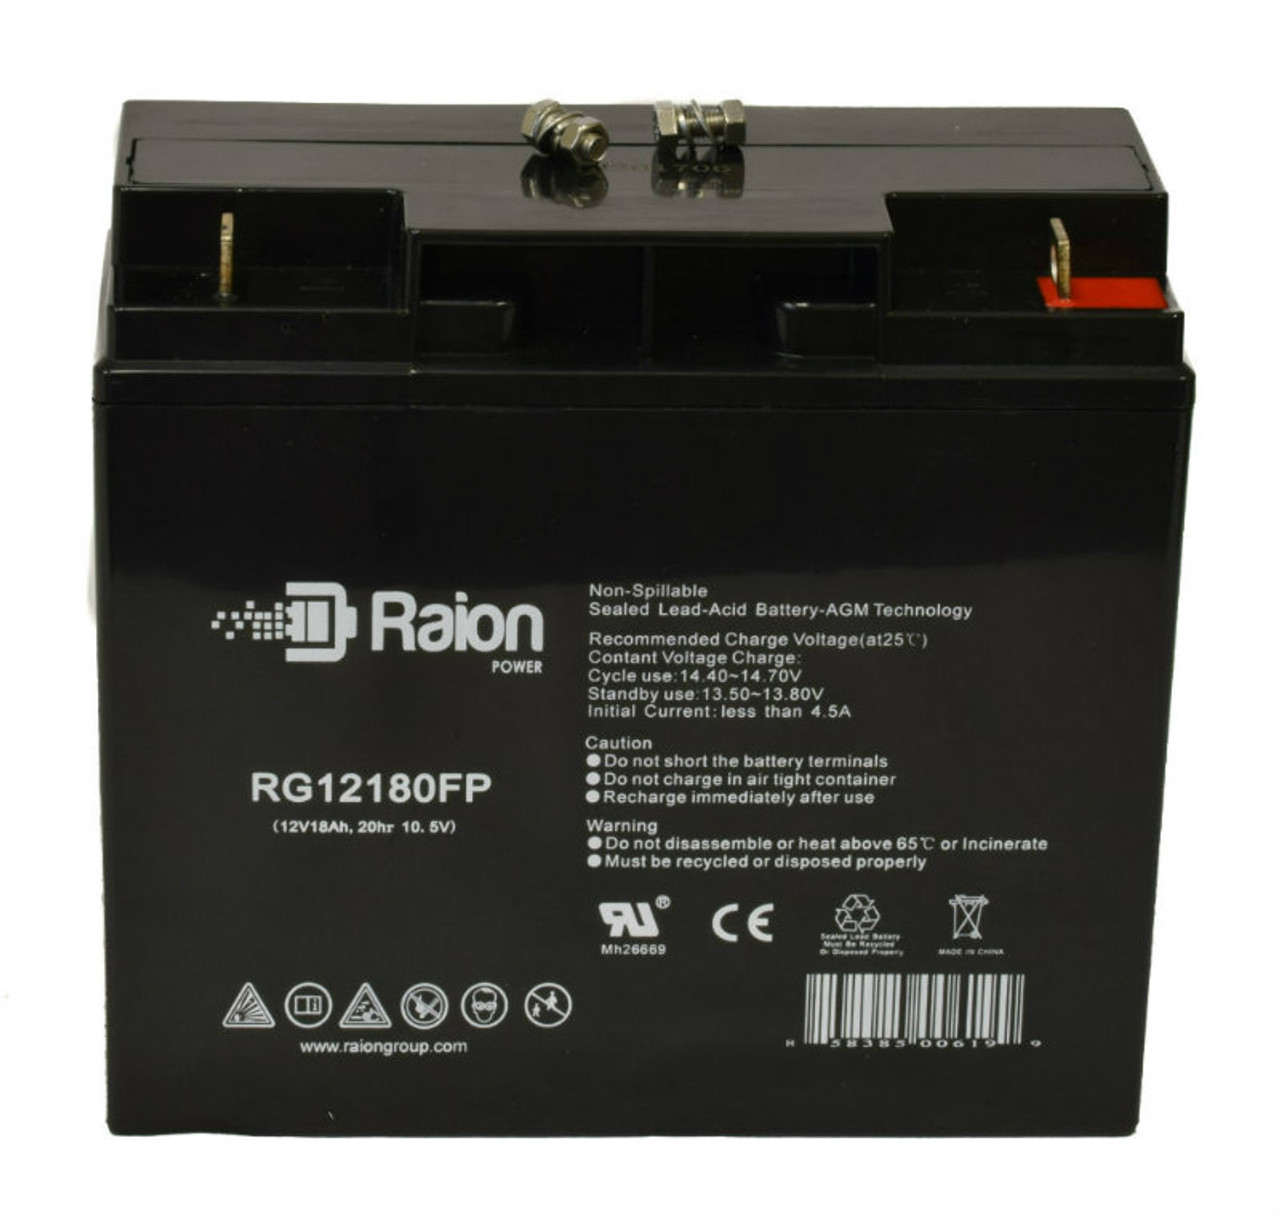 Raion Power RG12180FP 12V 18Ah Lead Acid Battery for Ultracell UL18-12